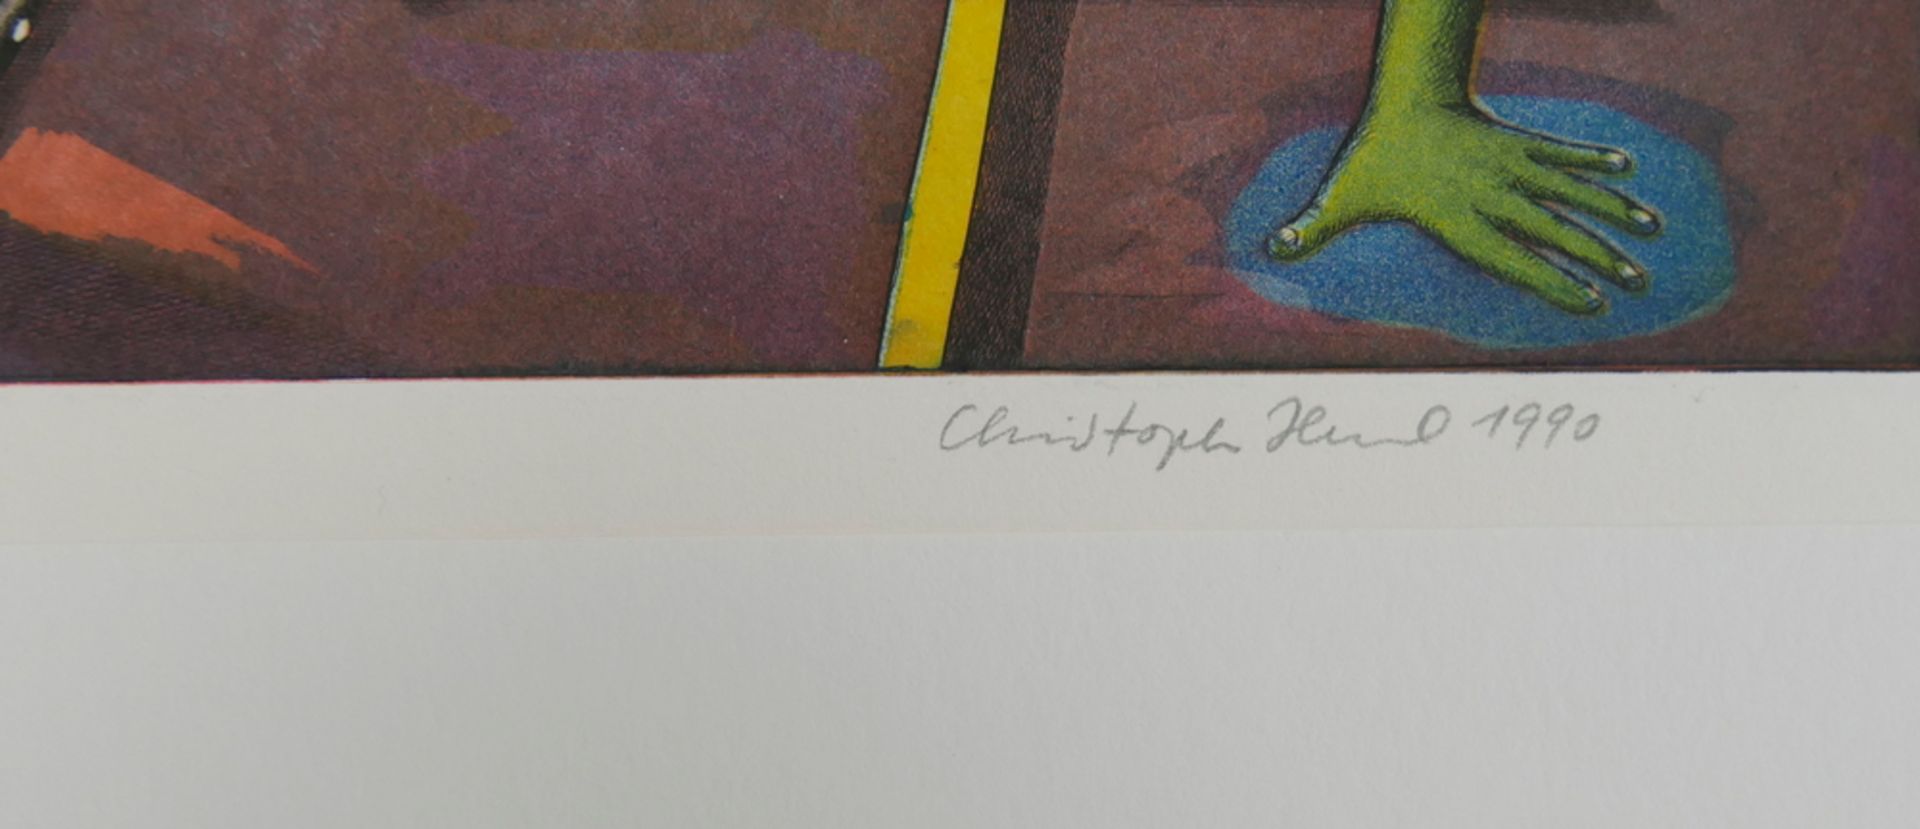 Christoph Hessel 1990. Auflage 80/160, handsigniert. Maße: ca. 50 x 65 cm - Bild 2 aus 2